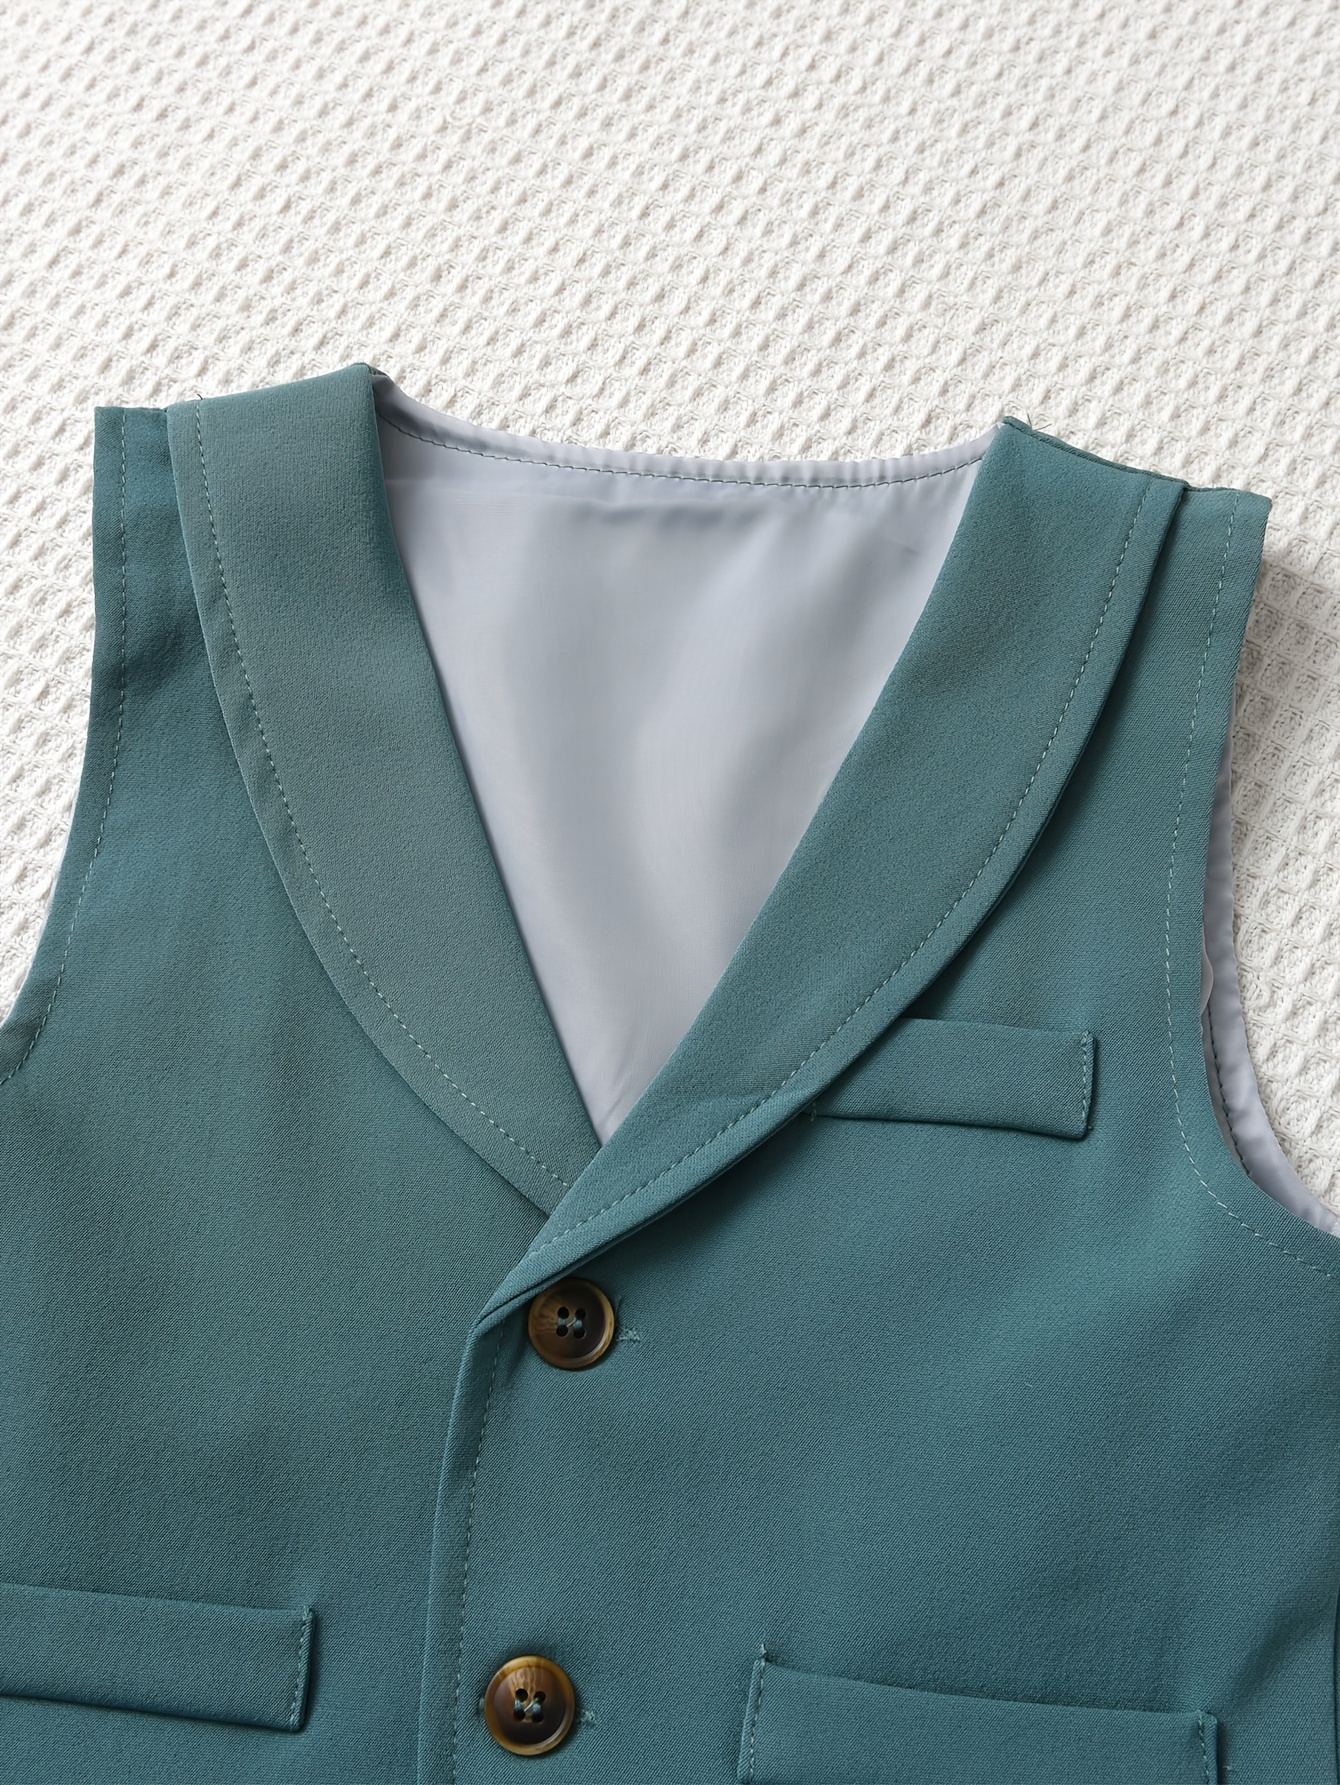 Conjunto de corbatín y chaleco de vestir para niño de color azul real sólido